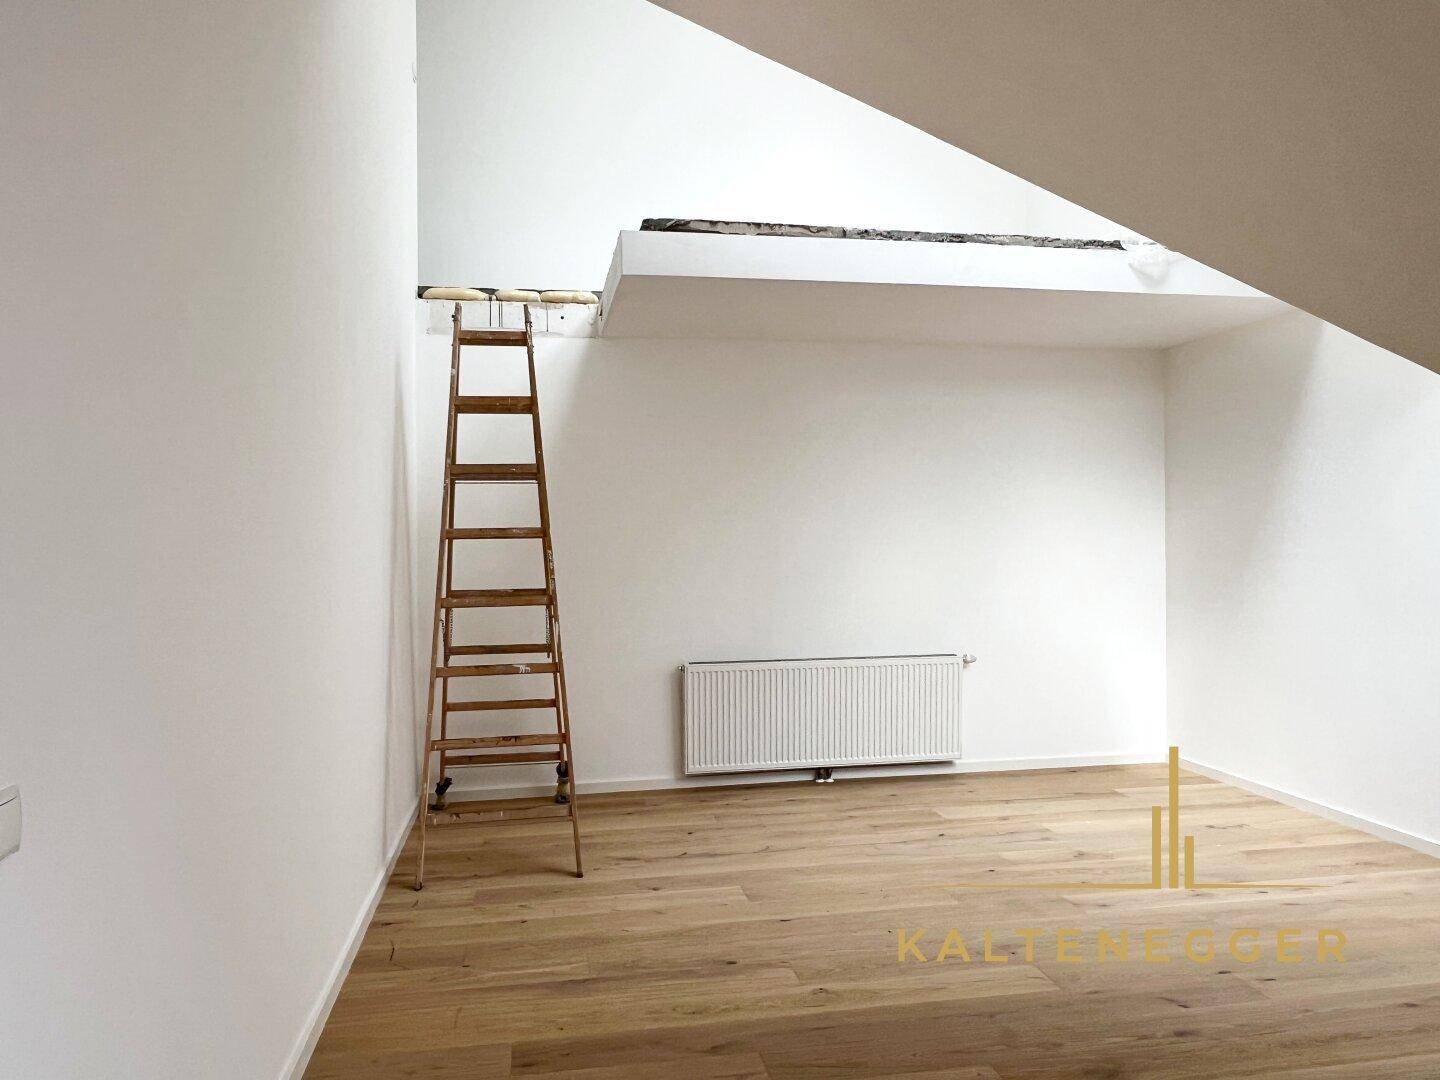 Galerie mit Schlafzimmer über Stufen erreichbar (noch nicht fertig)